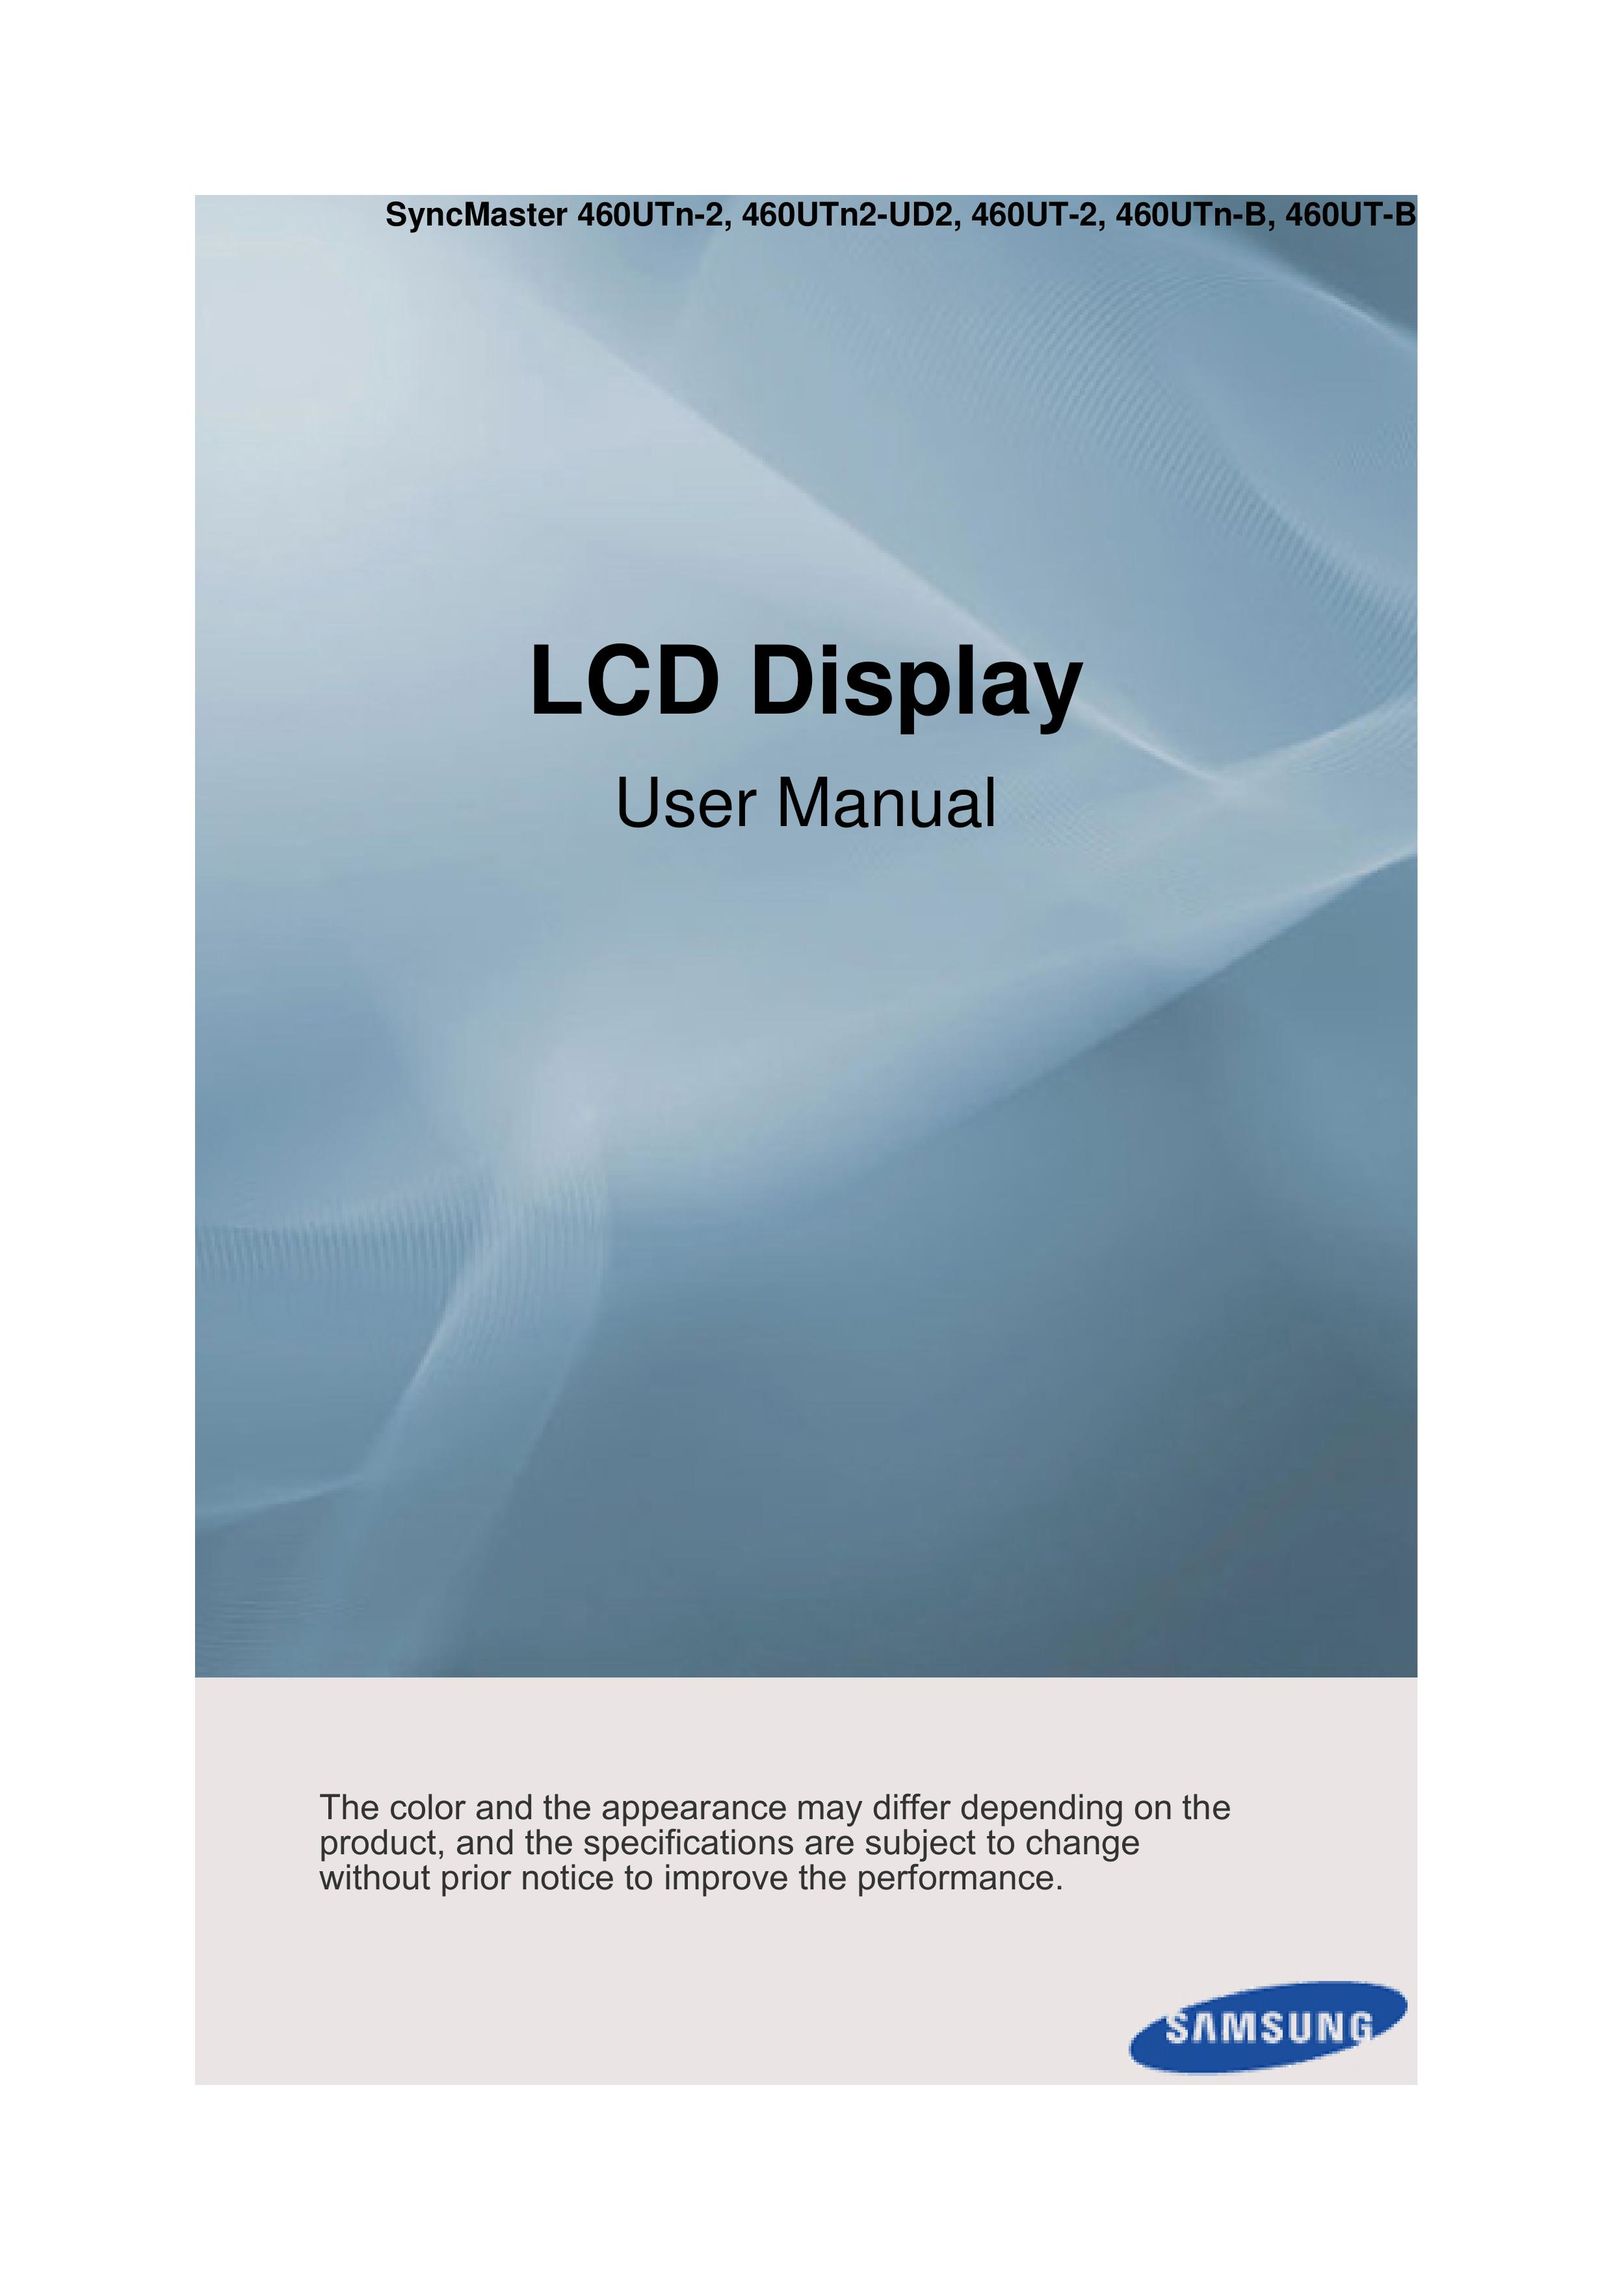 Samsung 460UTn-2 Car Video System User Manual